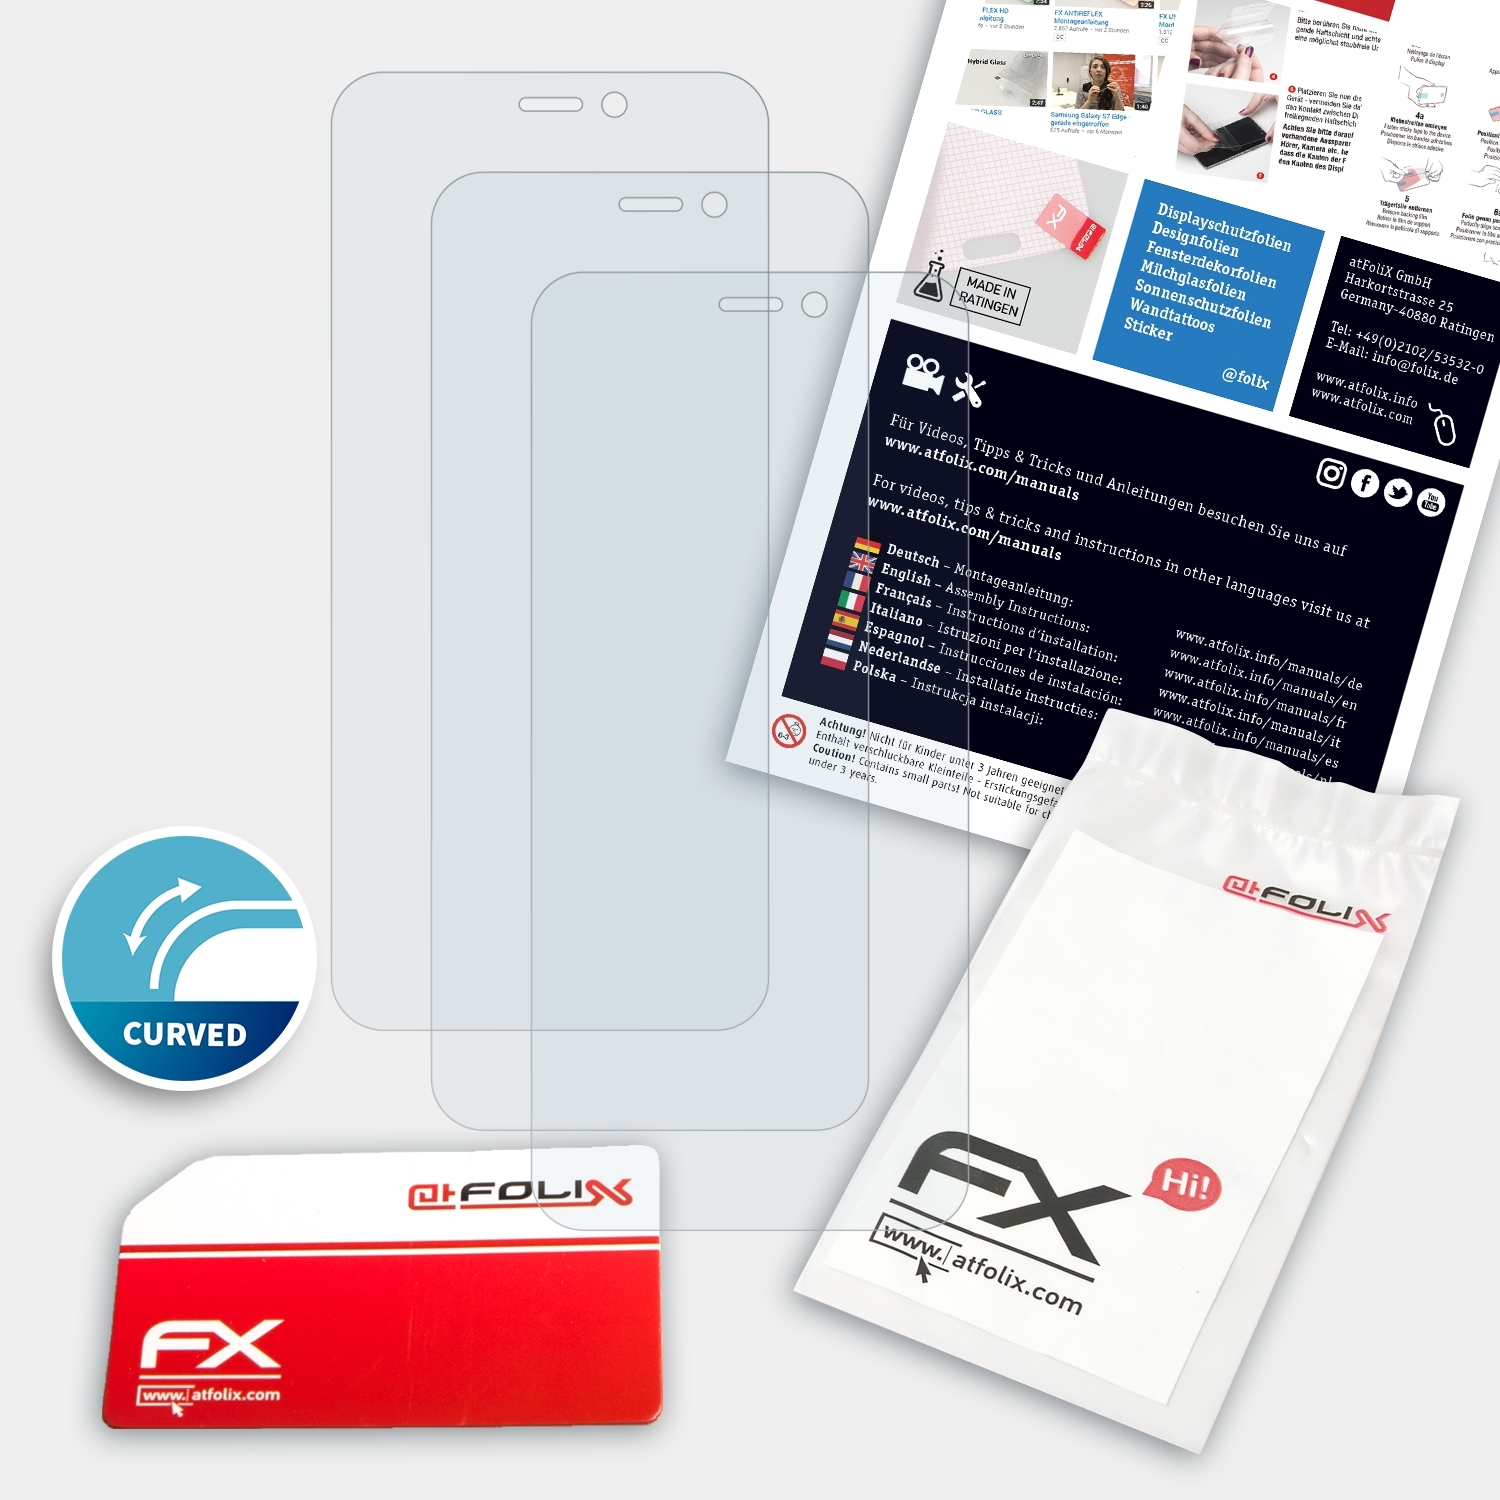 ATFOLIX 3x FX-ActiFleX Displayschutz(für Vodafone N10) Smart